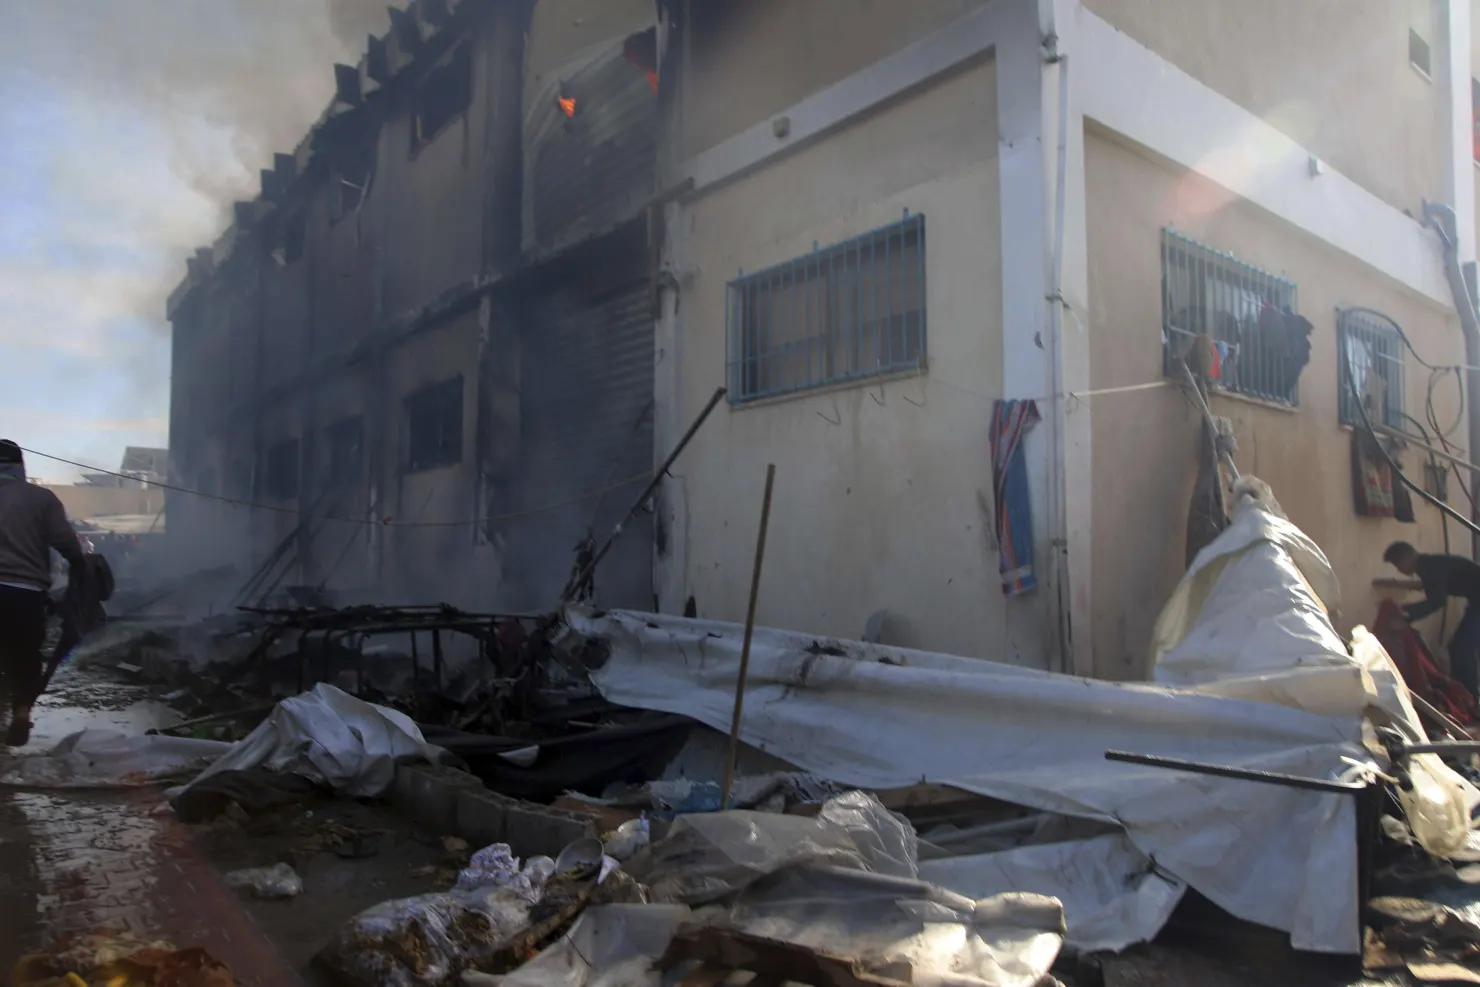 U.S. Expresses Concern over Israeli Attack on UN Training Centre in Gaza